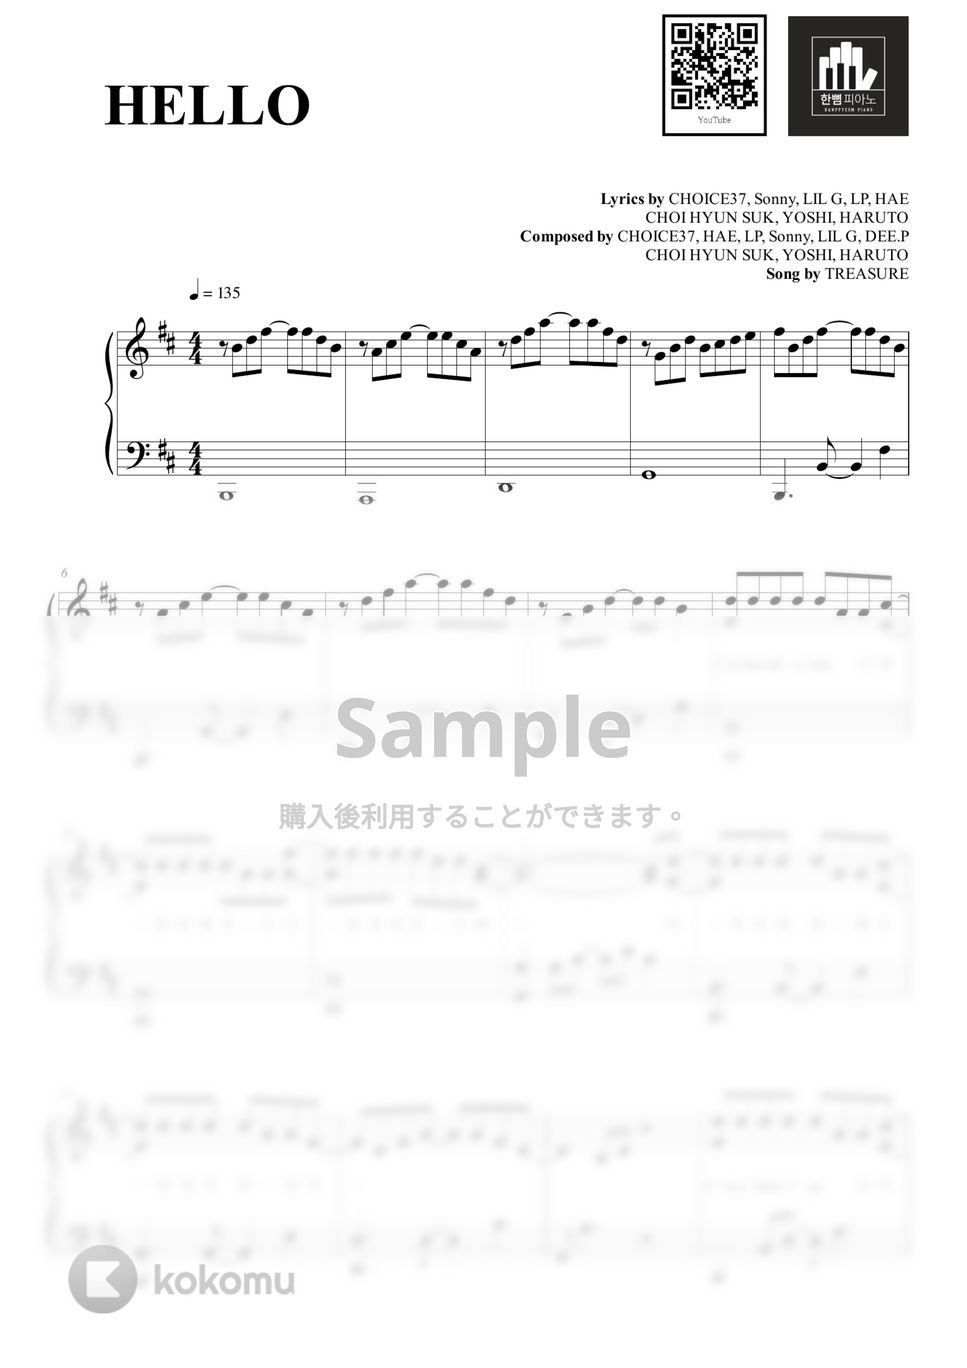 TREASURE - HELLO (PIANO COVER) by HANPPYEOMPIANO